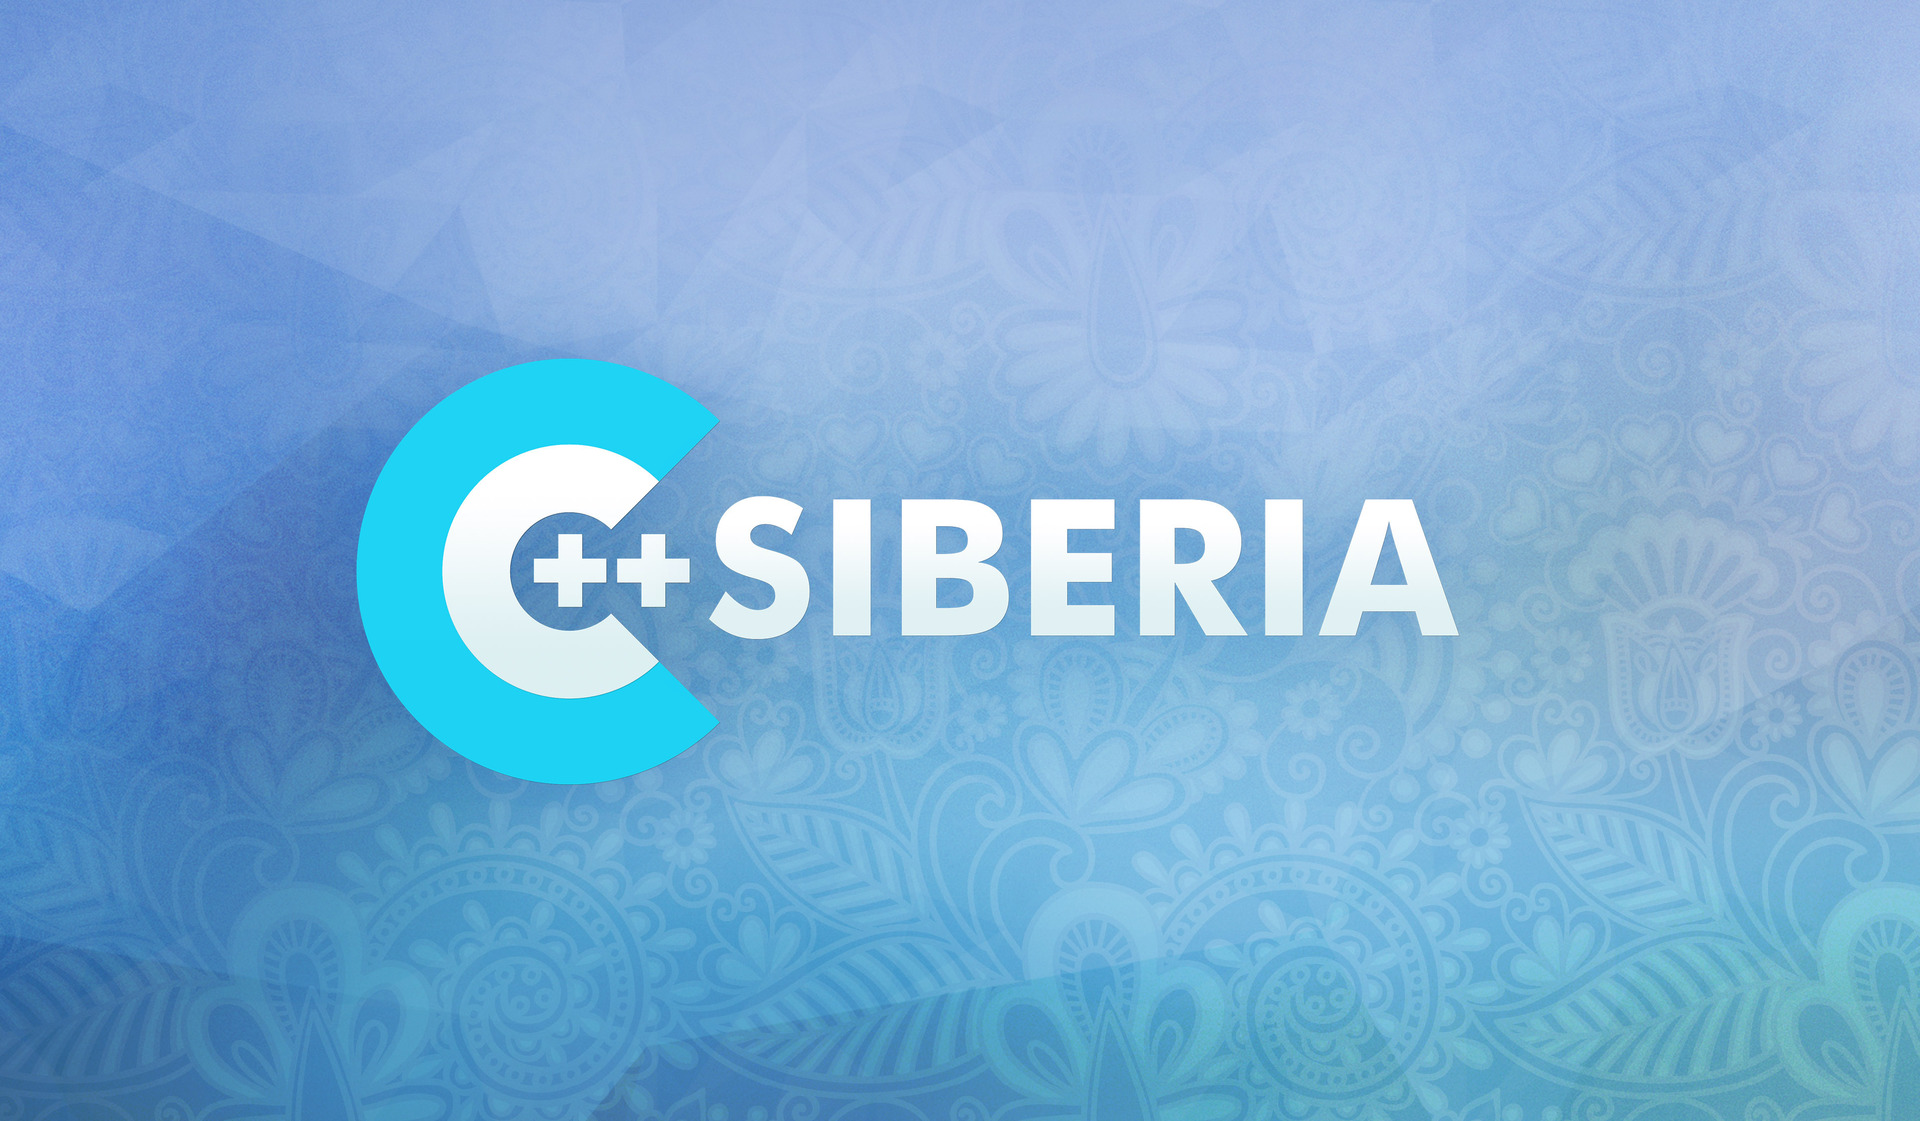 /C++ Siberia